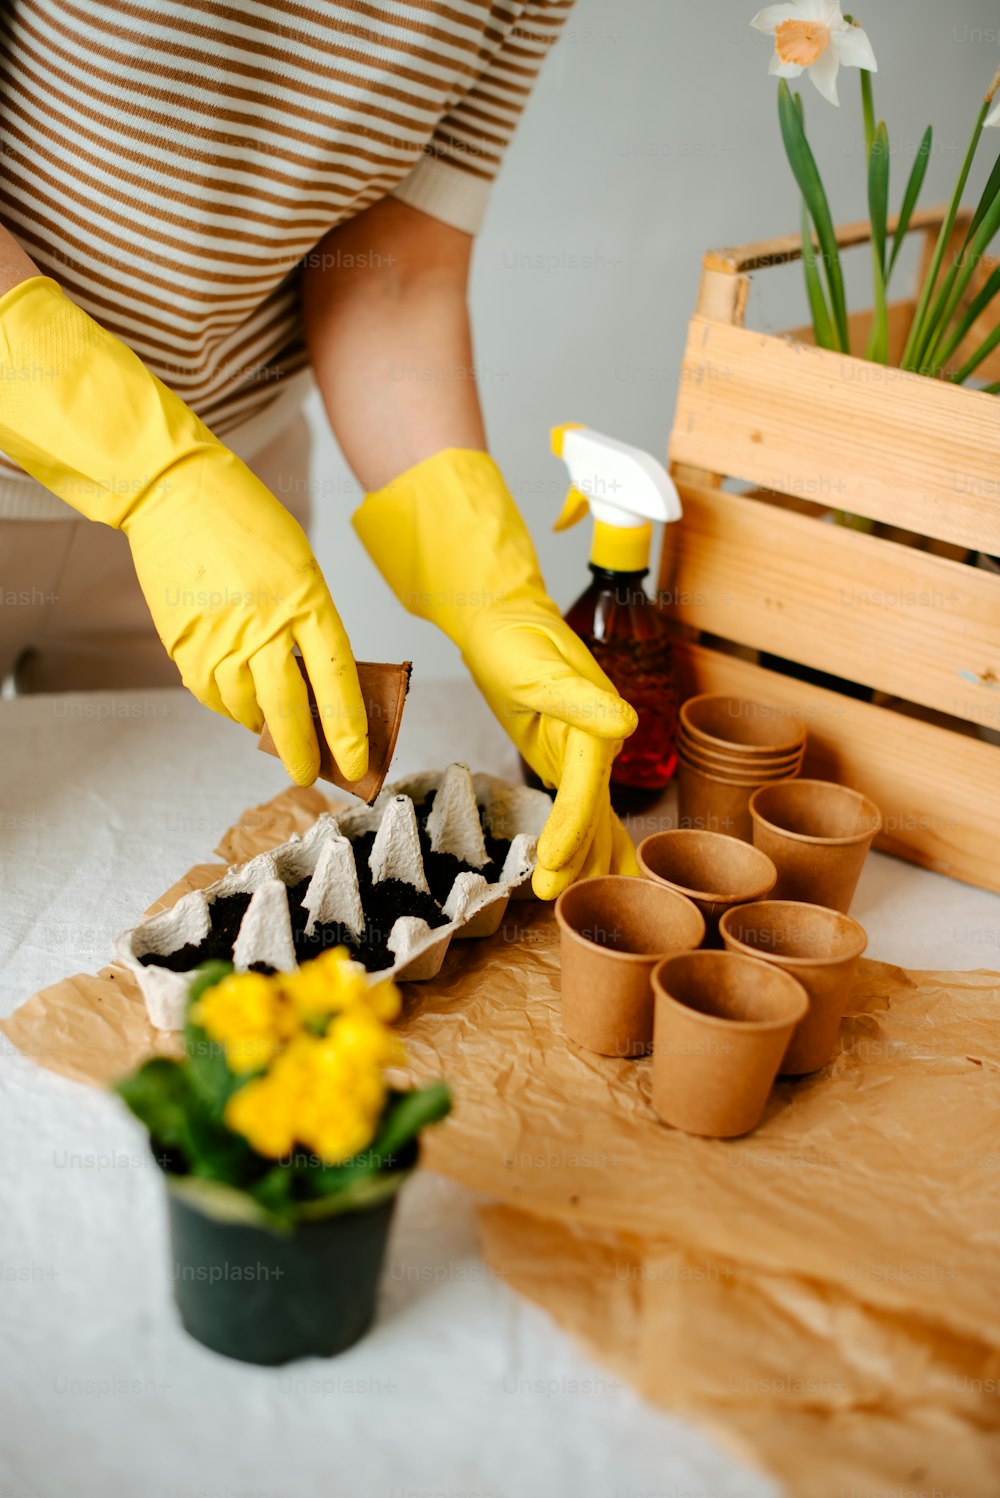 黄色い手袋と黄色いゴム手袋をはめた人がカップケーキのトレイを掃除している